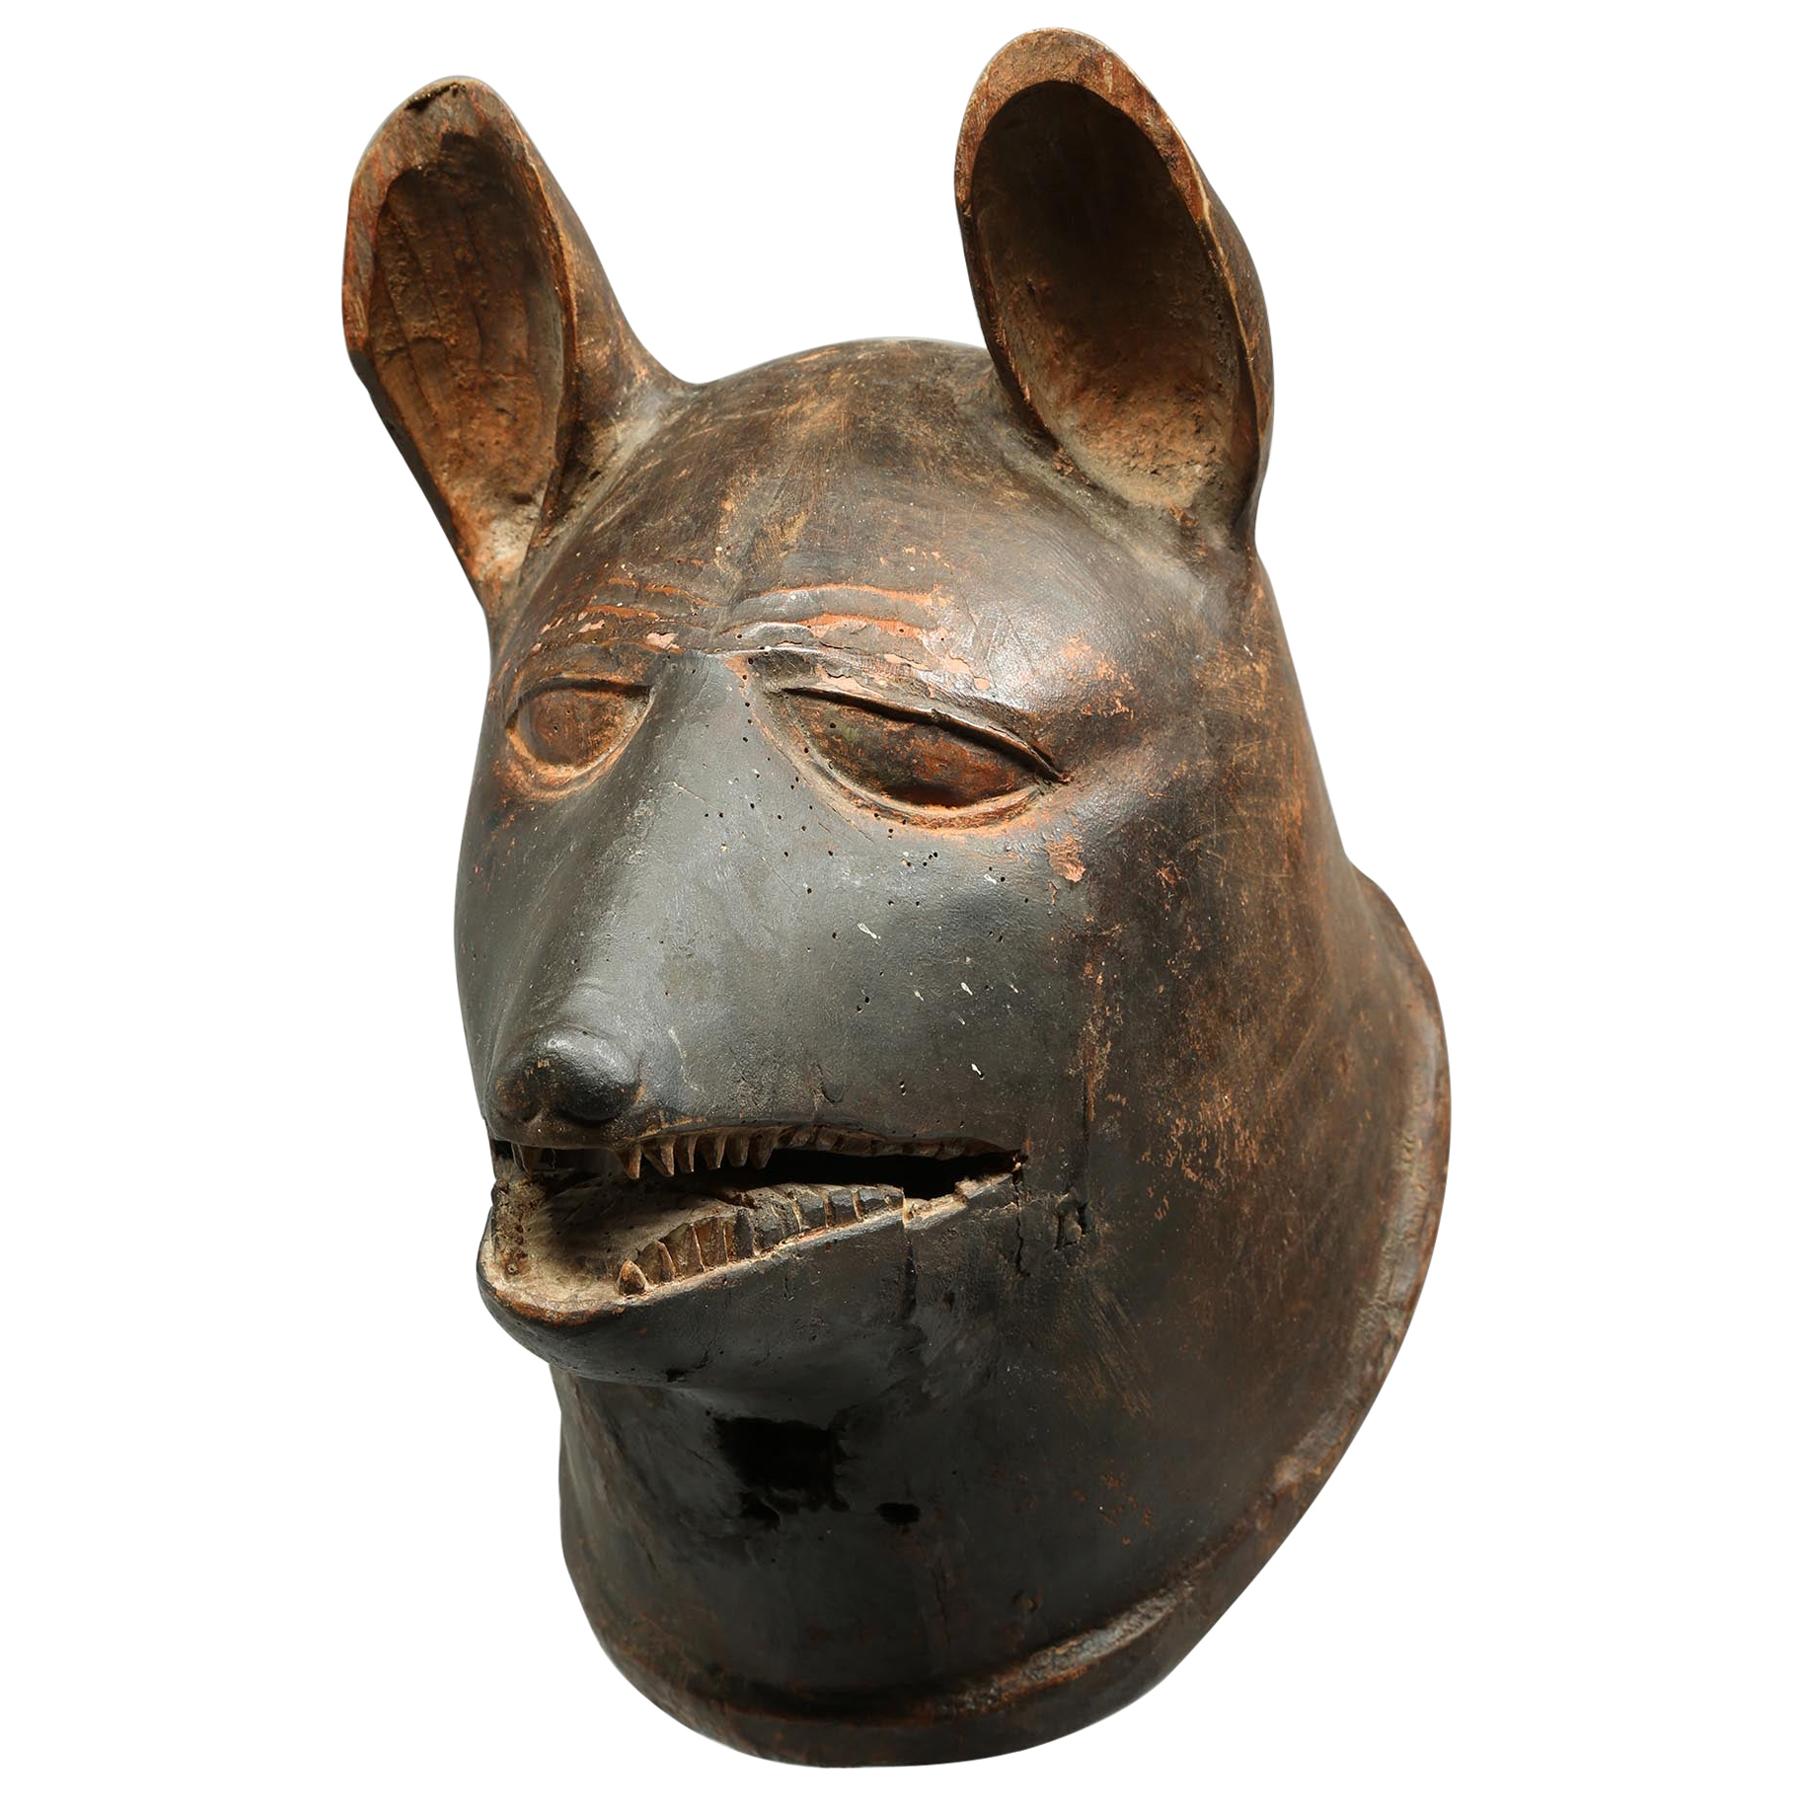 Remarquable masque de casque animal Makonde, chien ou Hyena, Tanzanie, début du 20e siècle